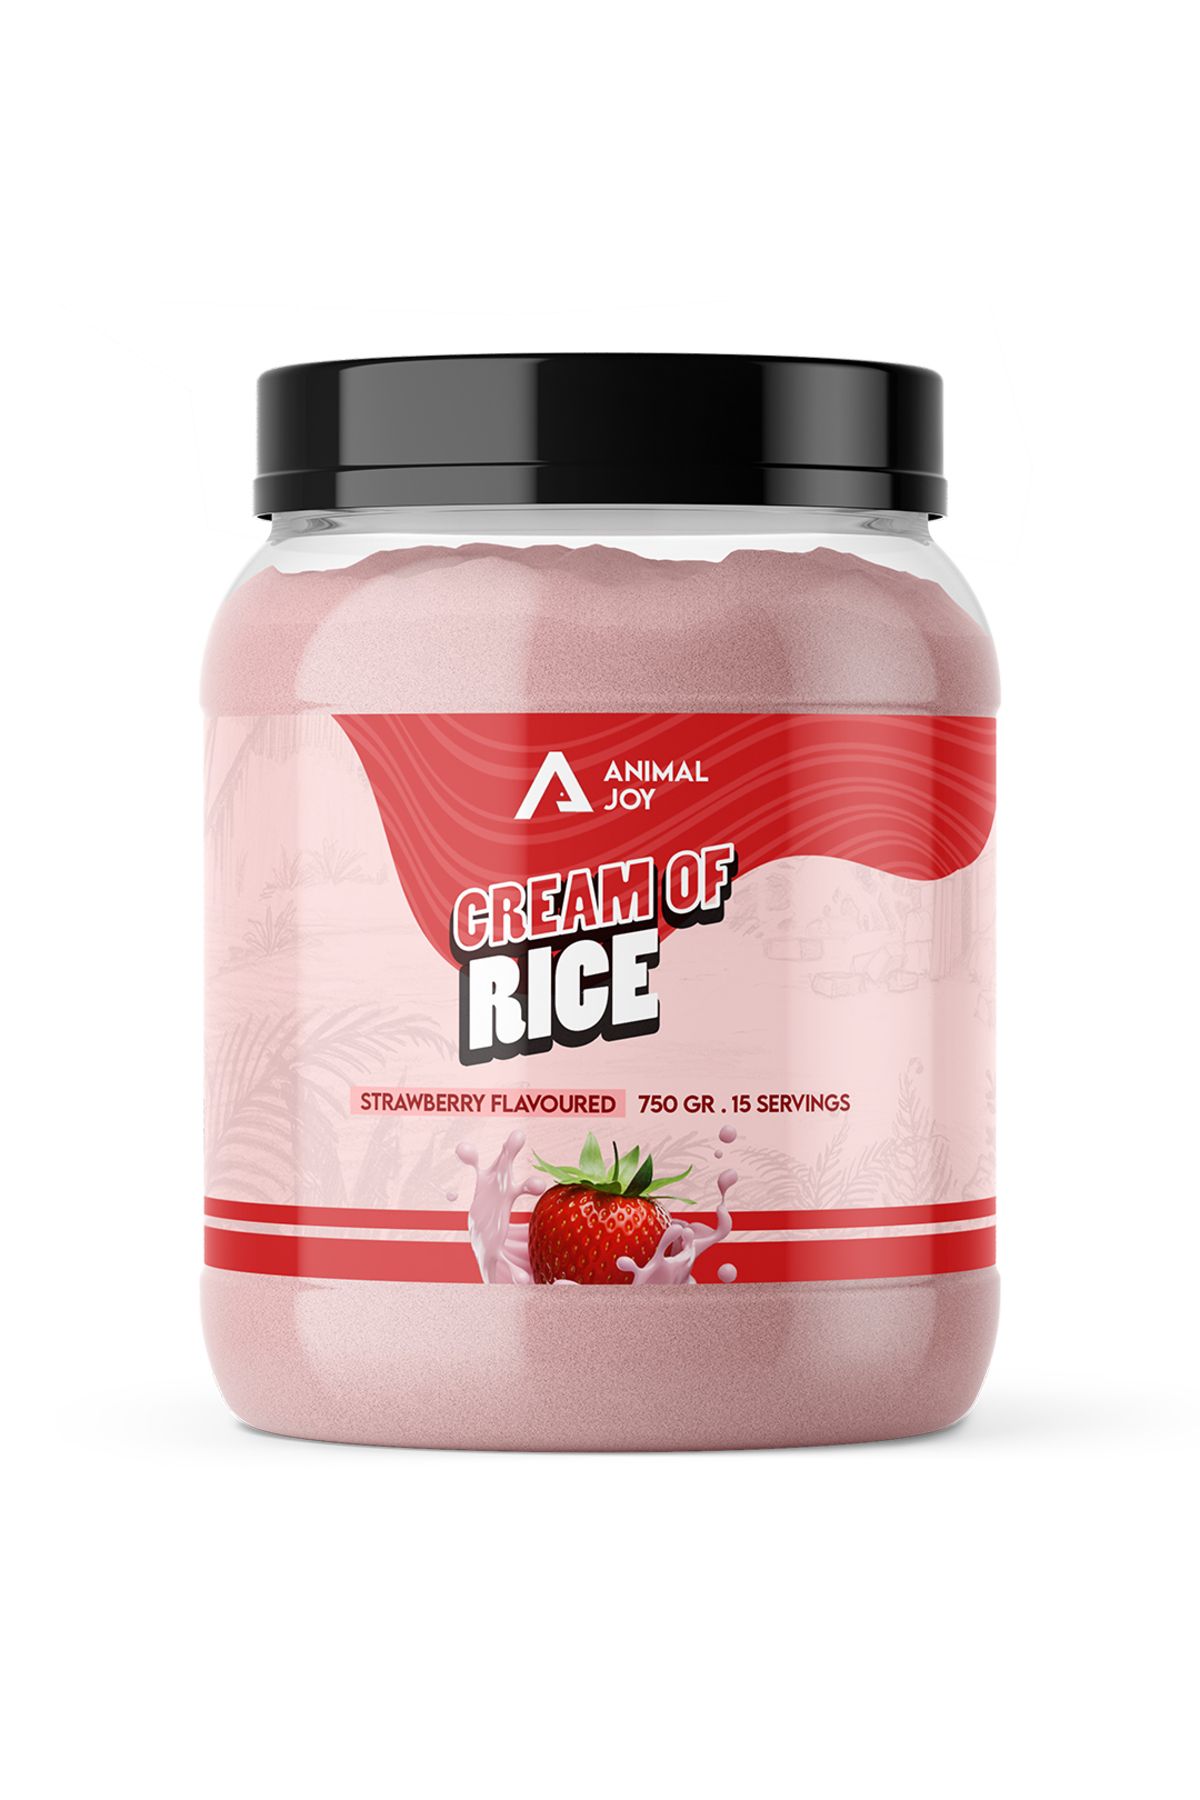 Animal Joy Cream Of Rice - Pirinç Unu Kreması - Çilek - 750 gr - 15 Servis